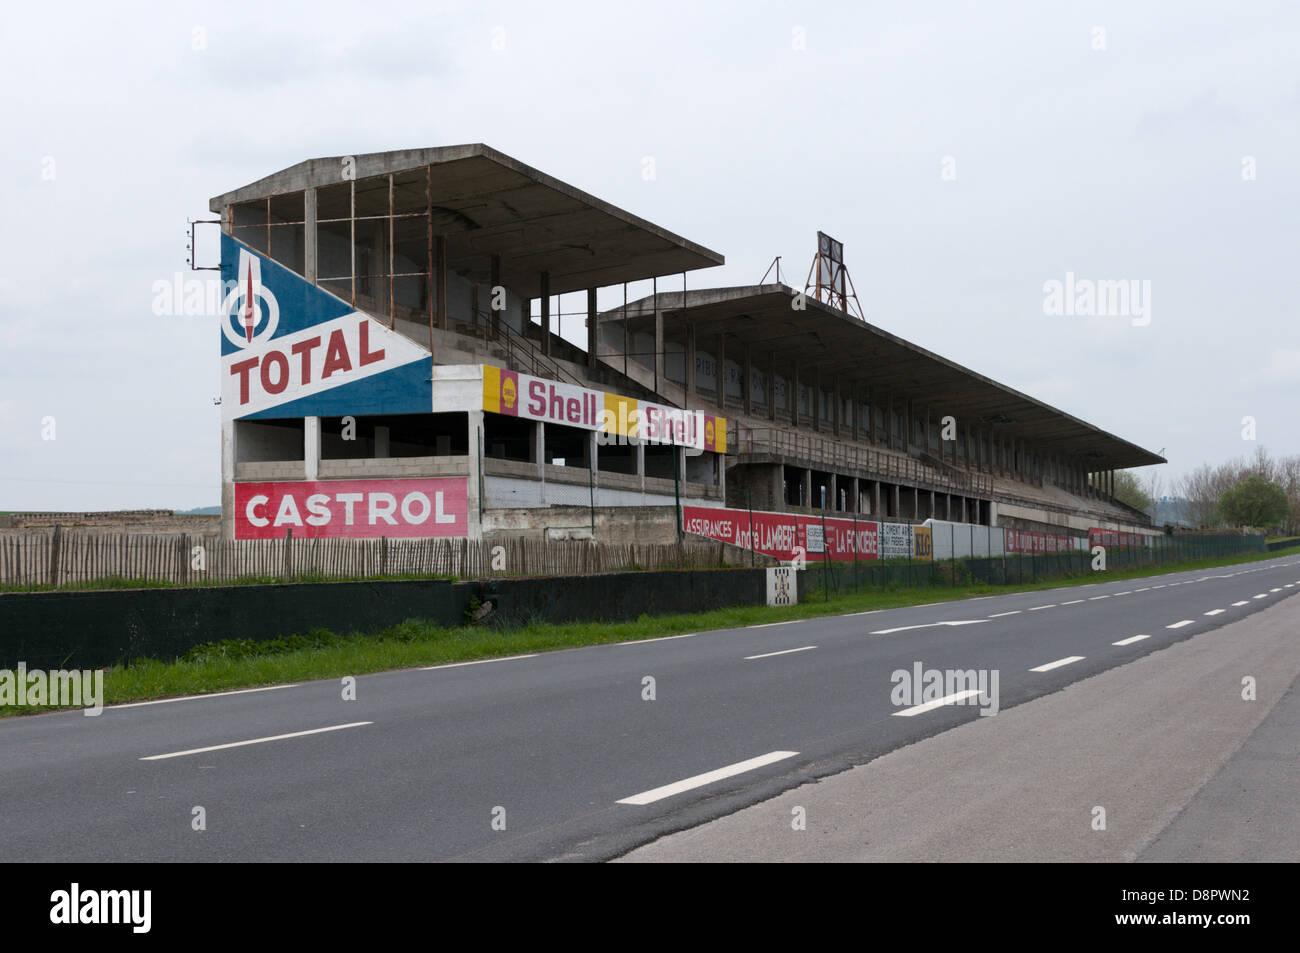 Die Überreste eines Teils des Reims-Gueux Racing Circuit neben eine Straße im Norden Frankreichs. Stockfoto